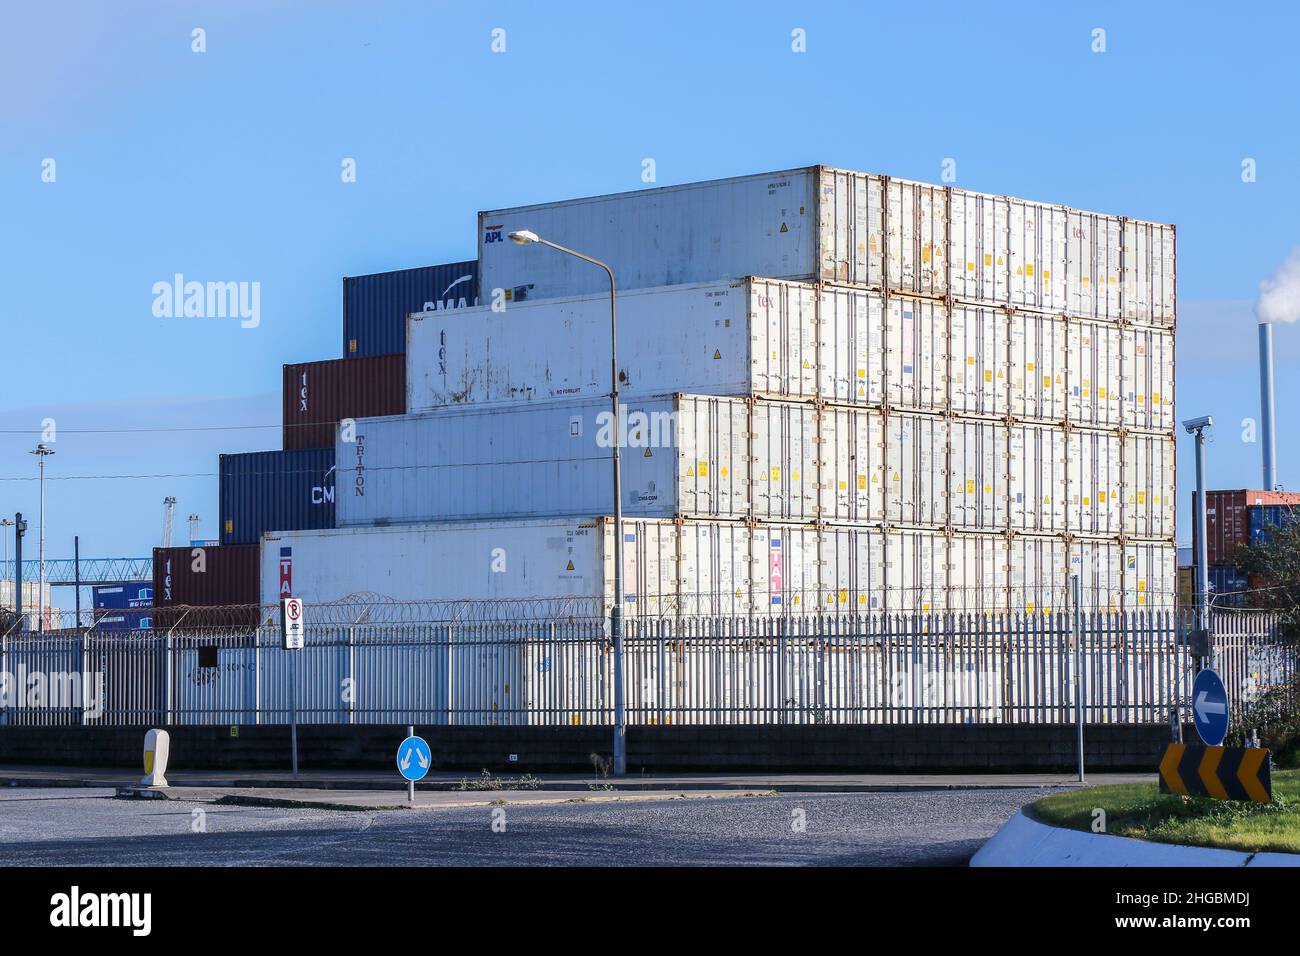 Pila de cajas de envío blancas en diseño escalonado con patrón lineal. Contenedores azules y marrones más allá. Industria del transporte marítimo en el puerto. Dublín, Irlanda Foto de stock